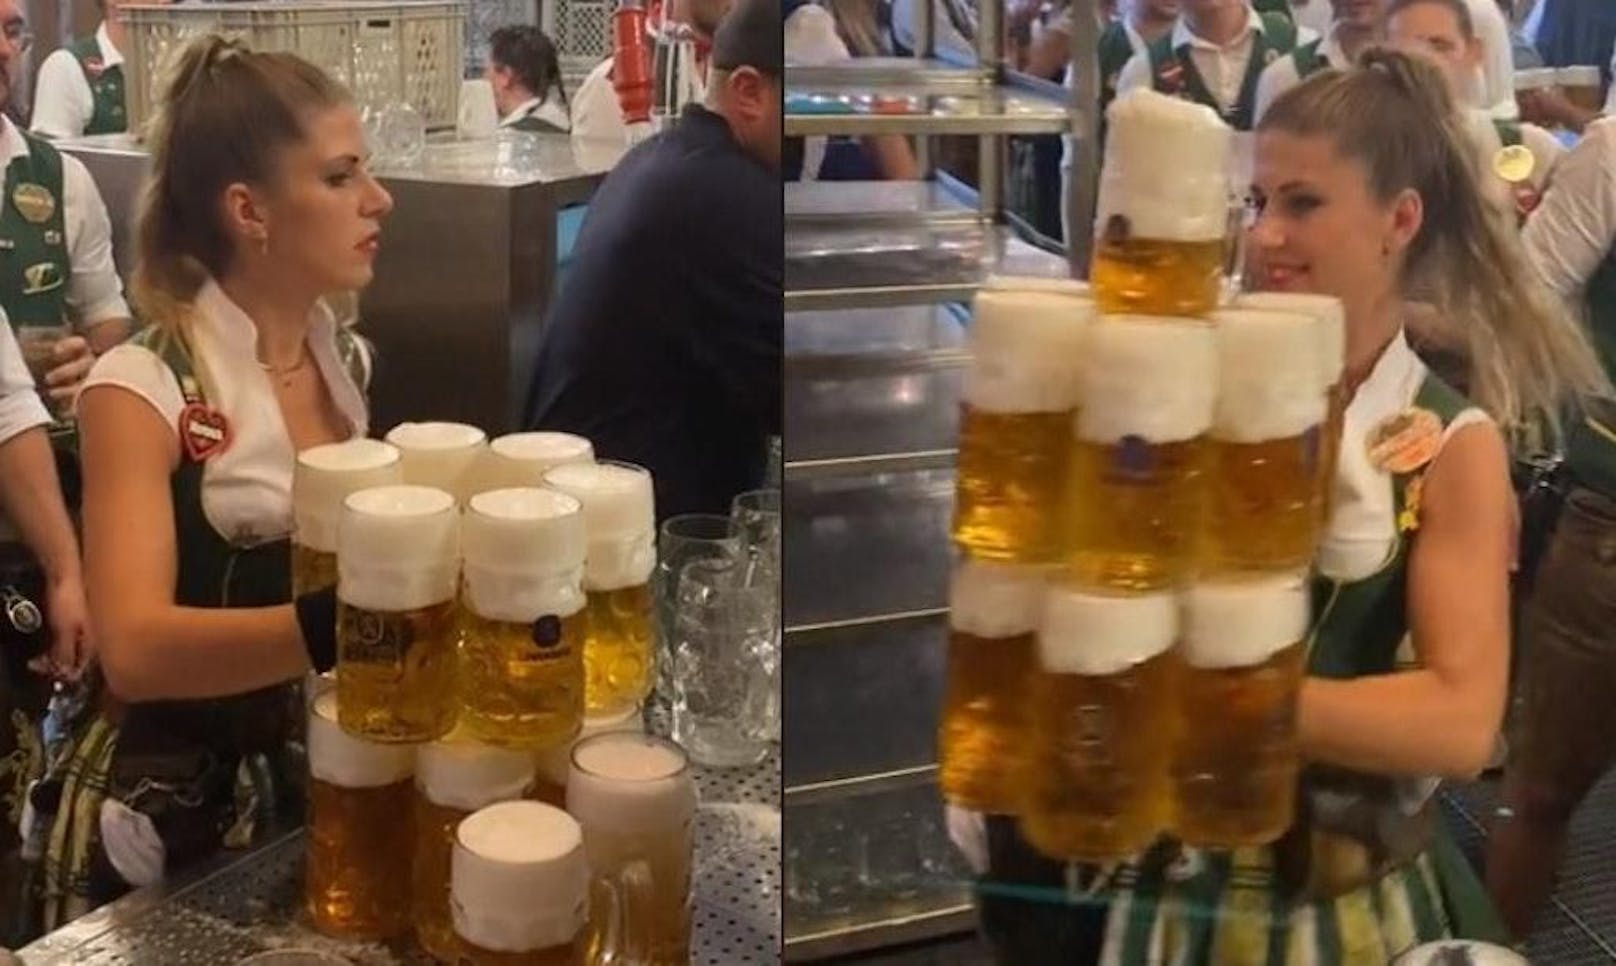 Beeindruckend: die Oktoberfest-Kellnerin transportiert Unmengen an Bier auf einmal. 